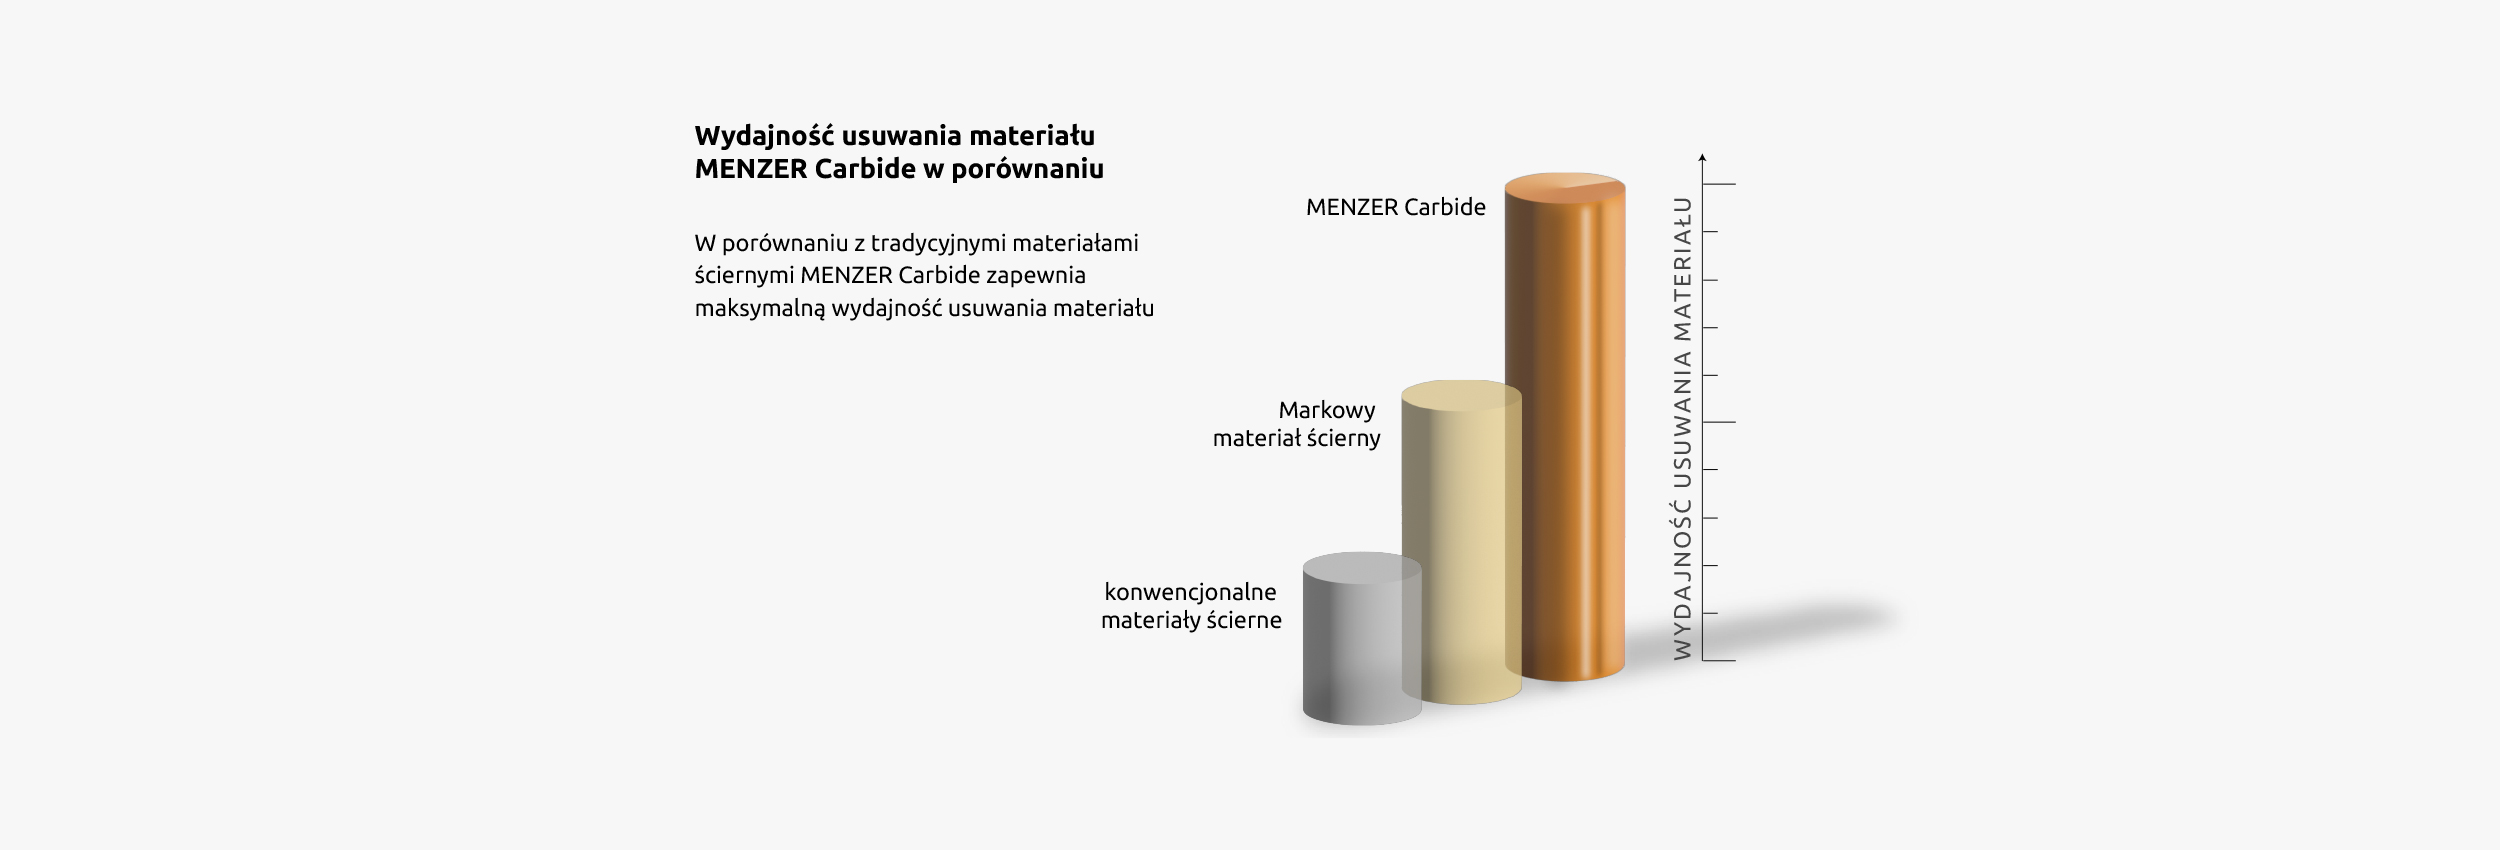 menzer_hintergrund_unterkategorie_carbide_materialabtrag_pl_2500x850px